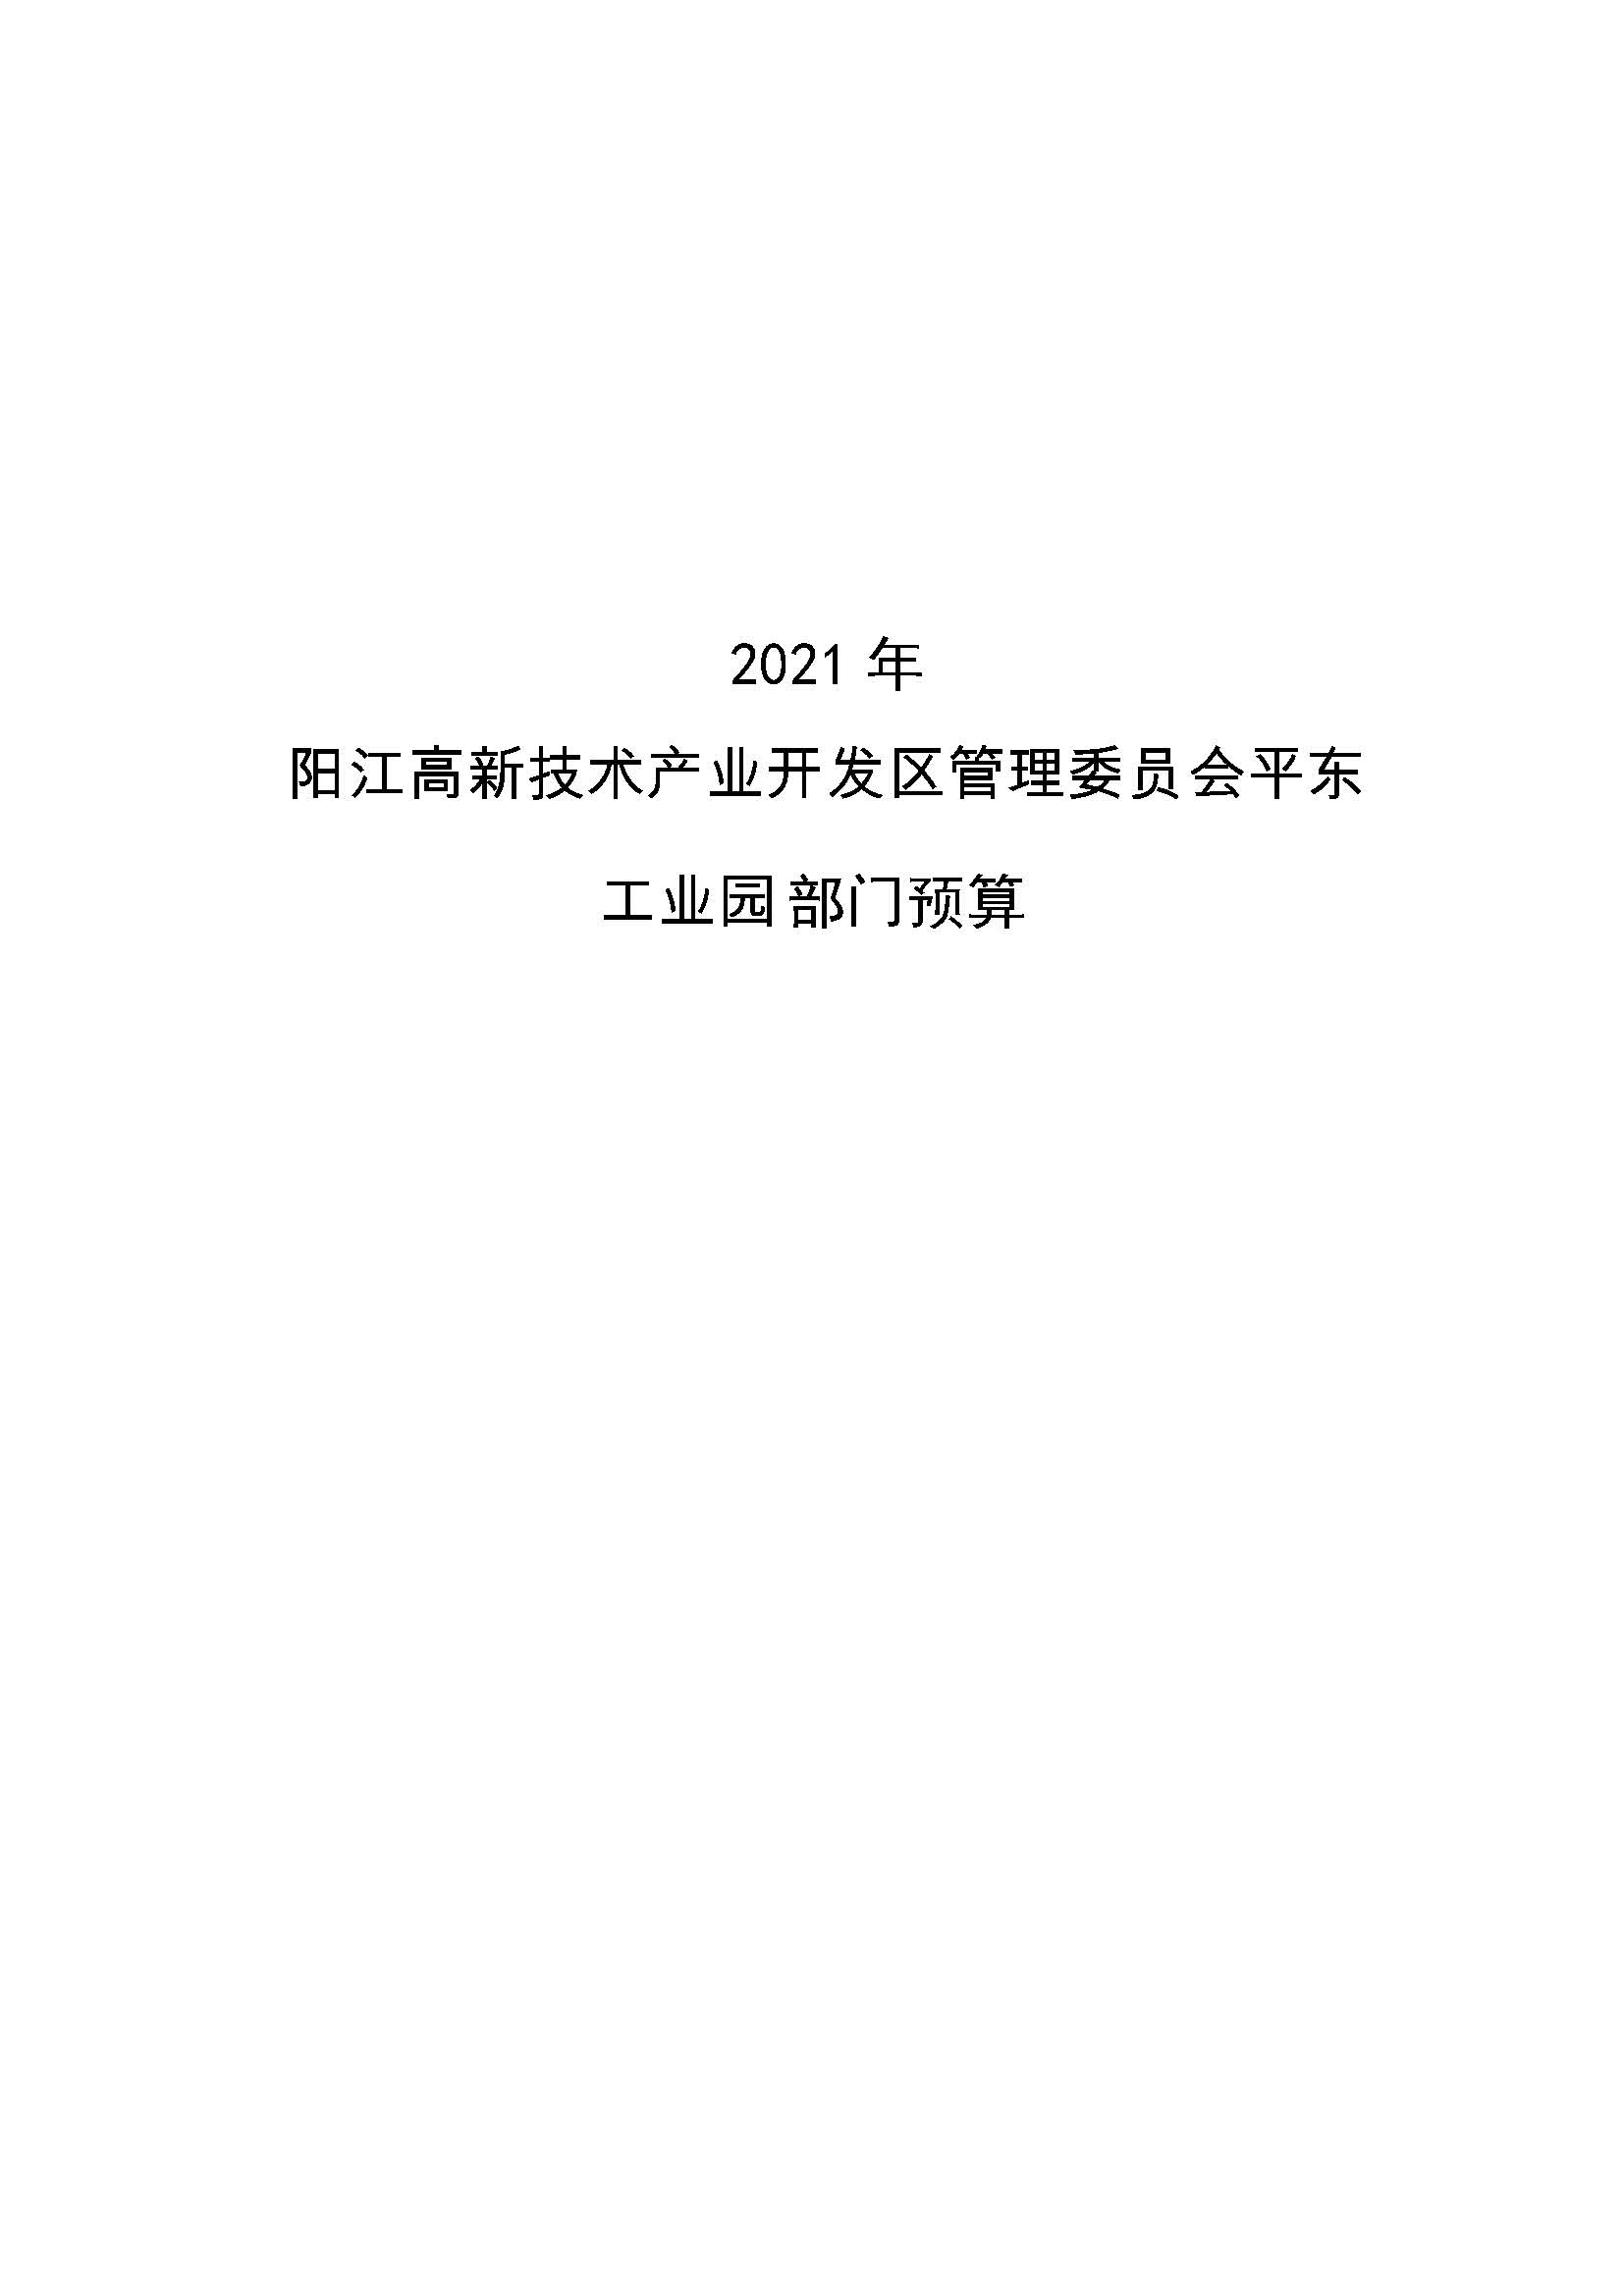 2021 年阳江高新技术产业开发区管理委员会平东工业园部门预算_页面_01.jpg